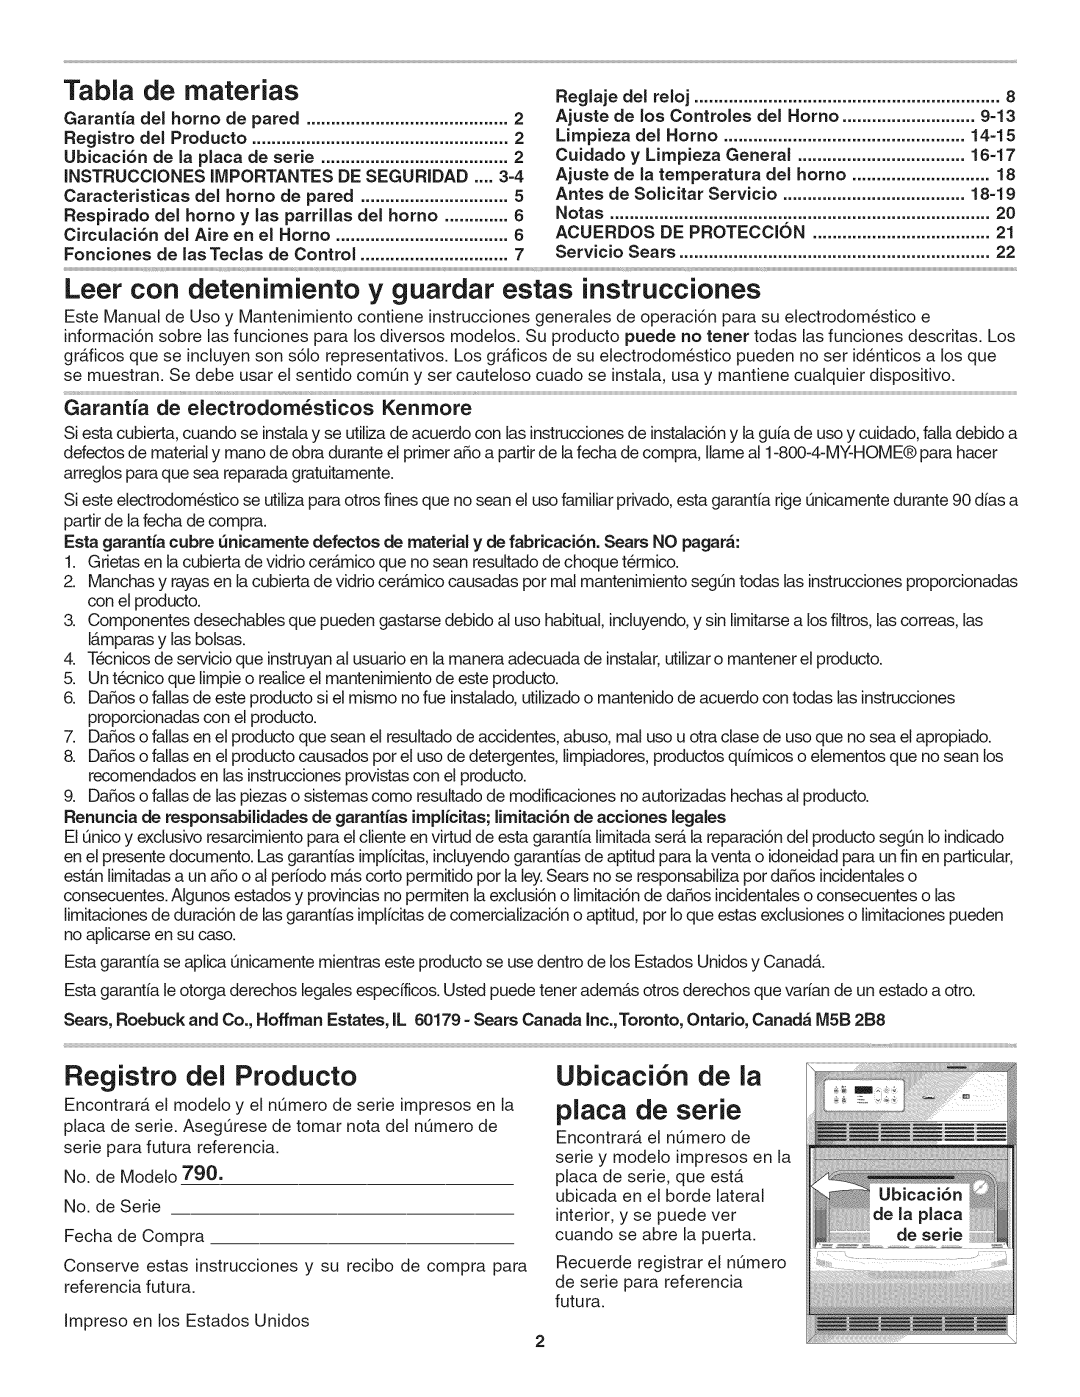 Kenmore 790. 4045 manual Tabla, de materias, Registro del Producto, Ubicaci6n de la, placa de serie 